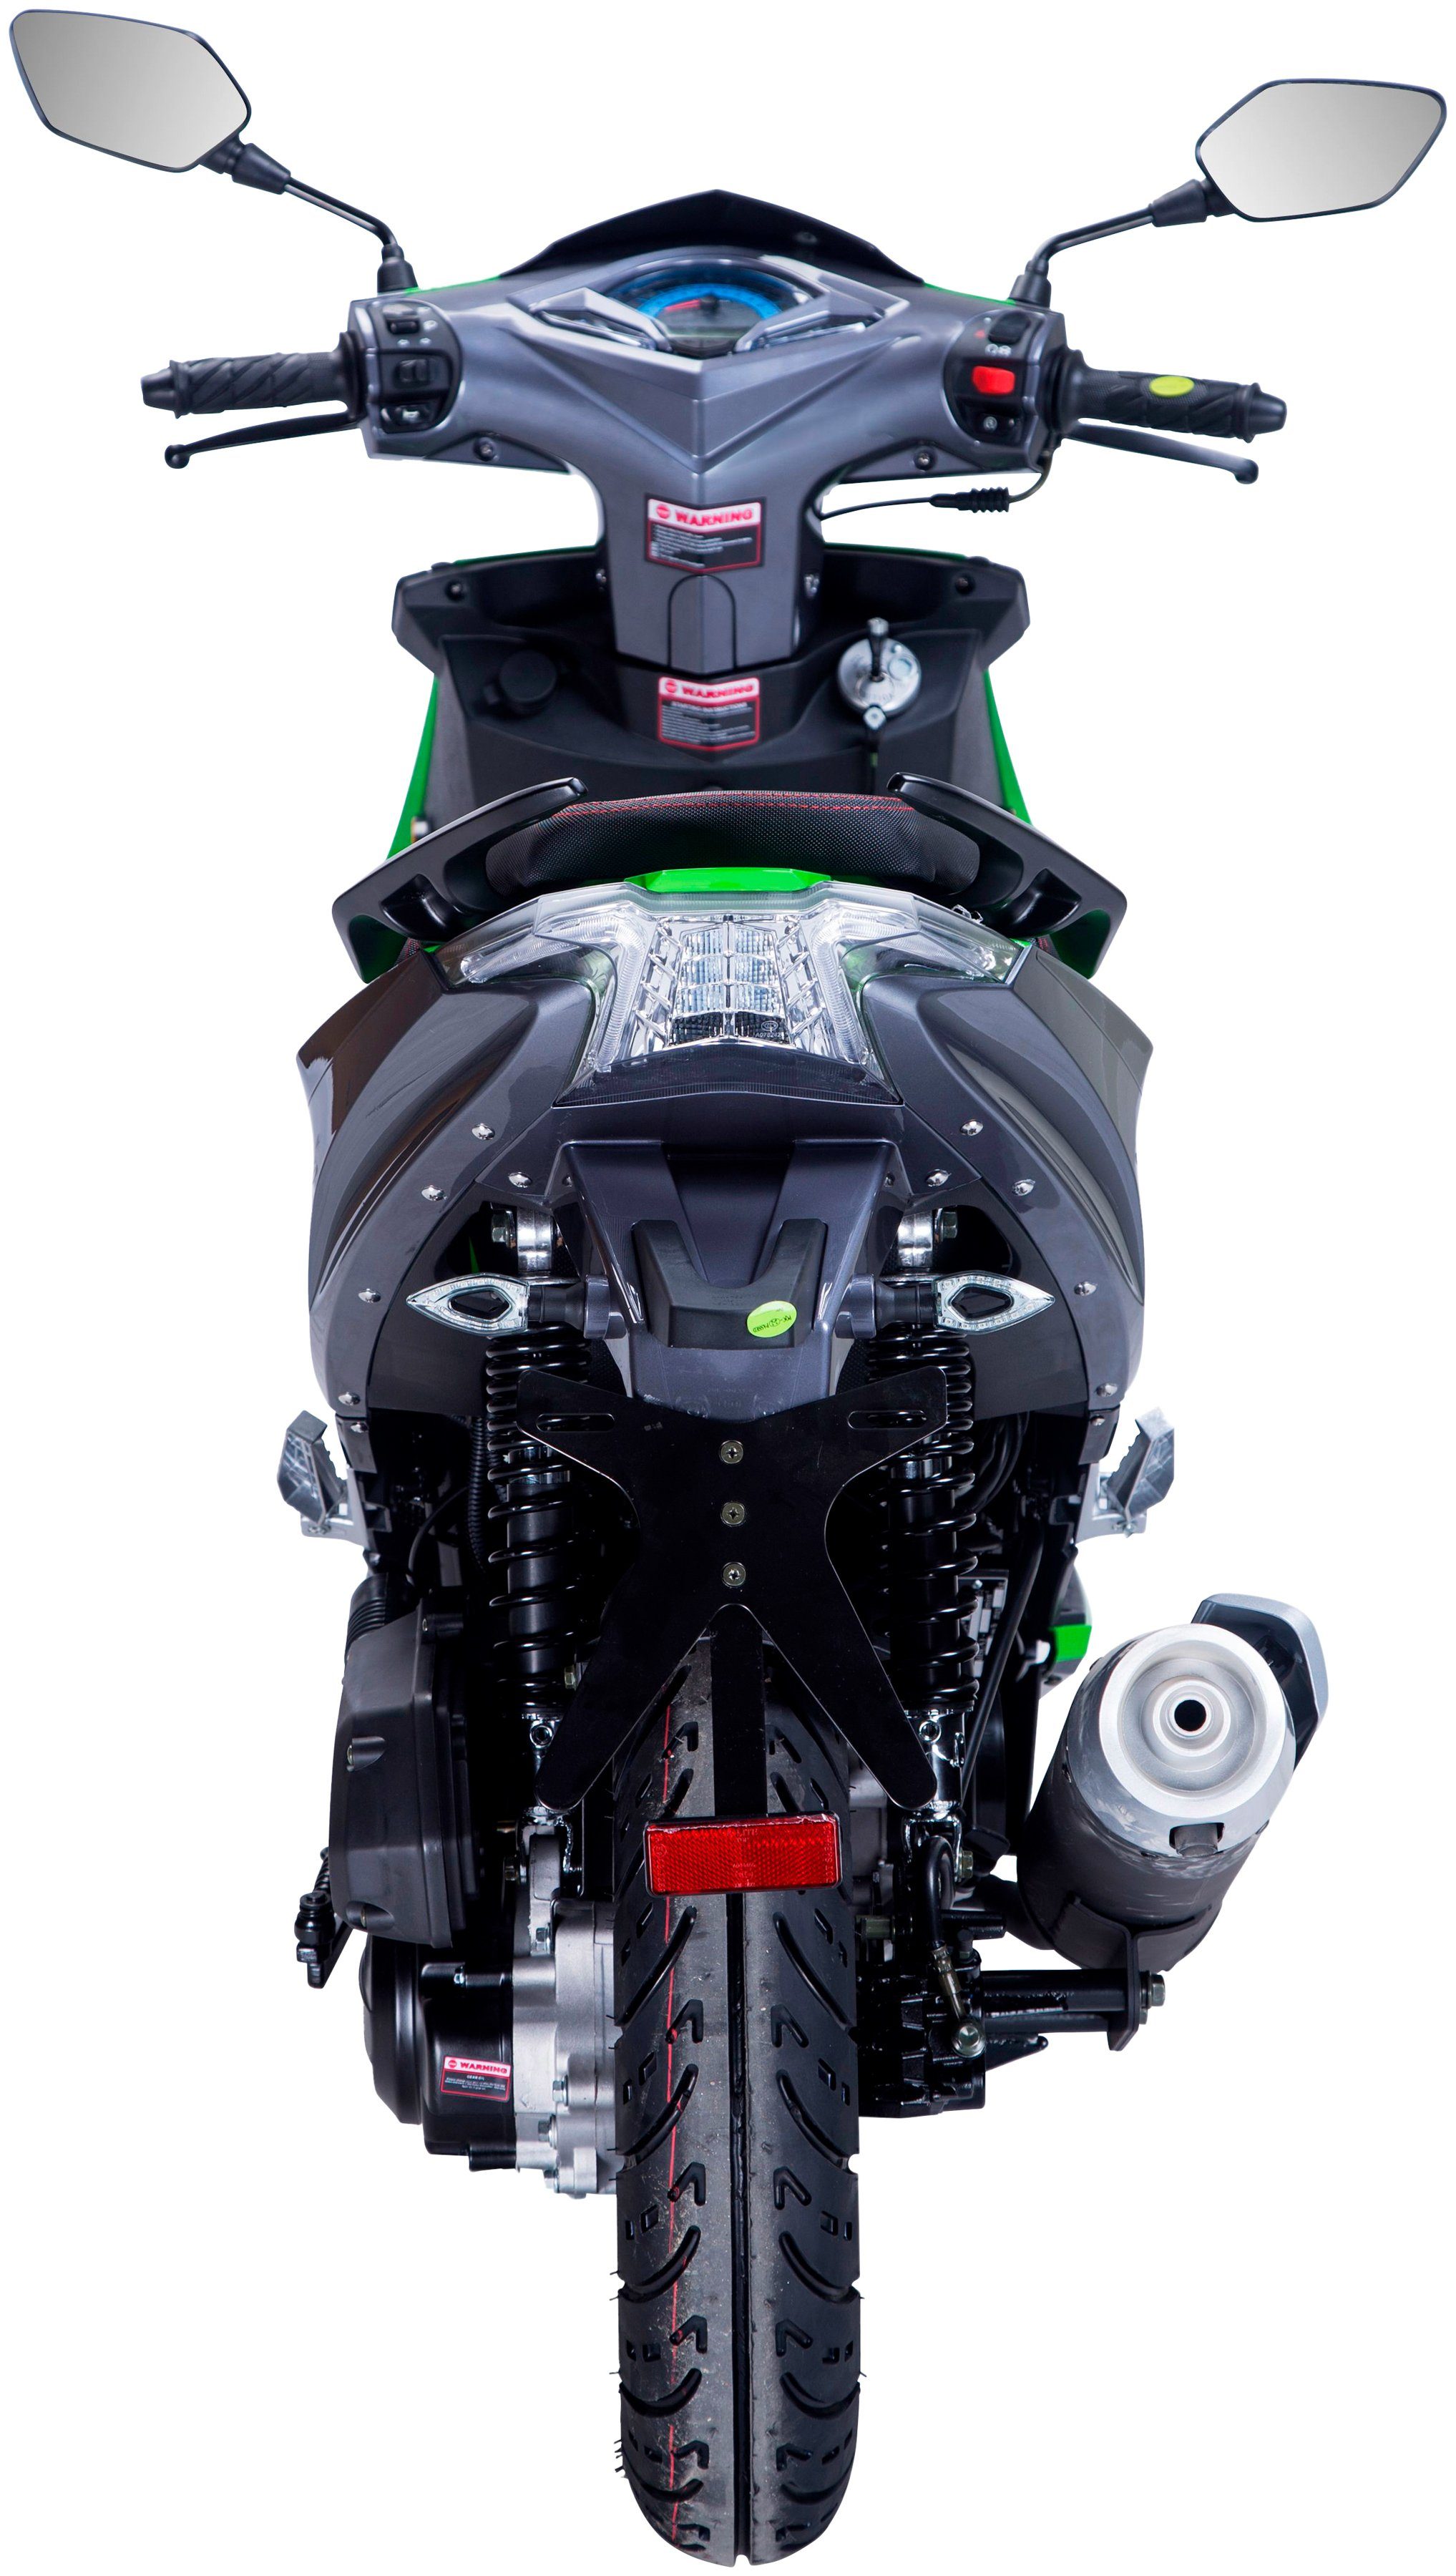 GT UNION Motorroller km/h, Euro Striker, 45 schwarz/grün 5 50 ccm